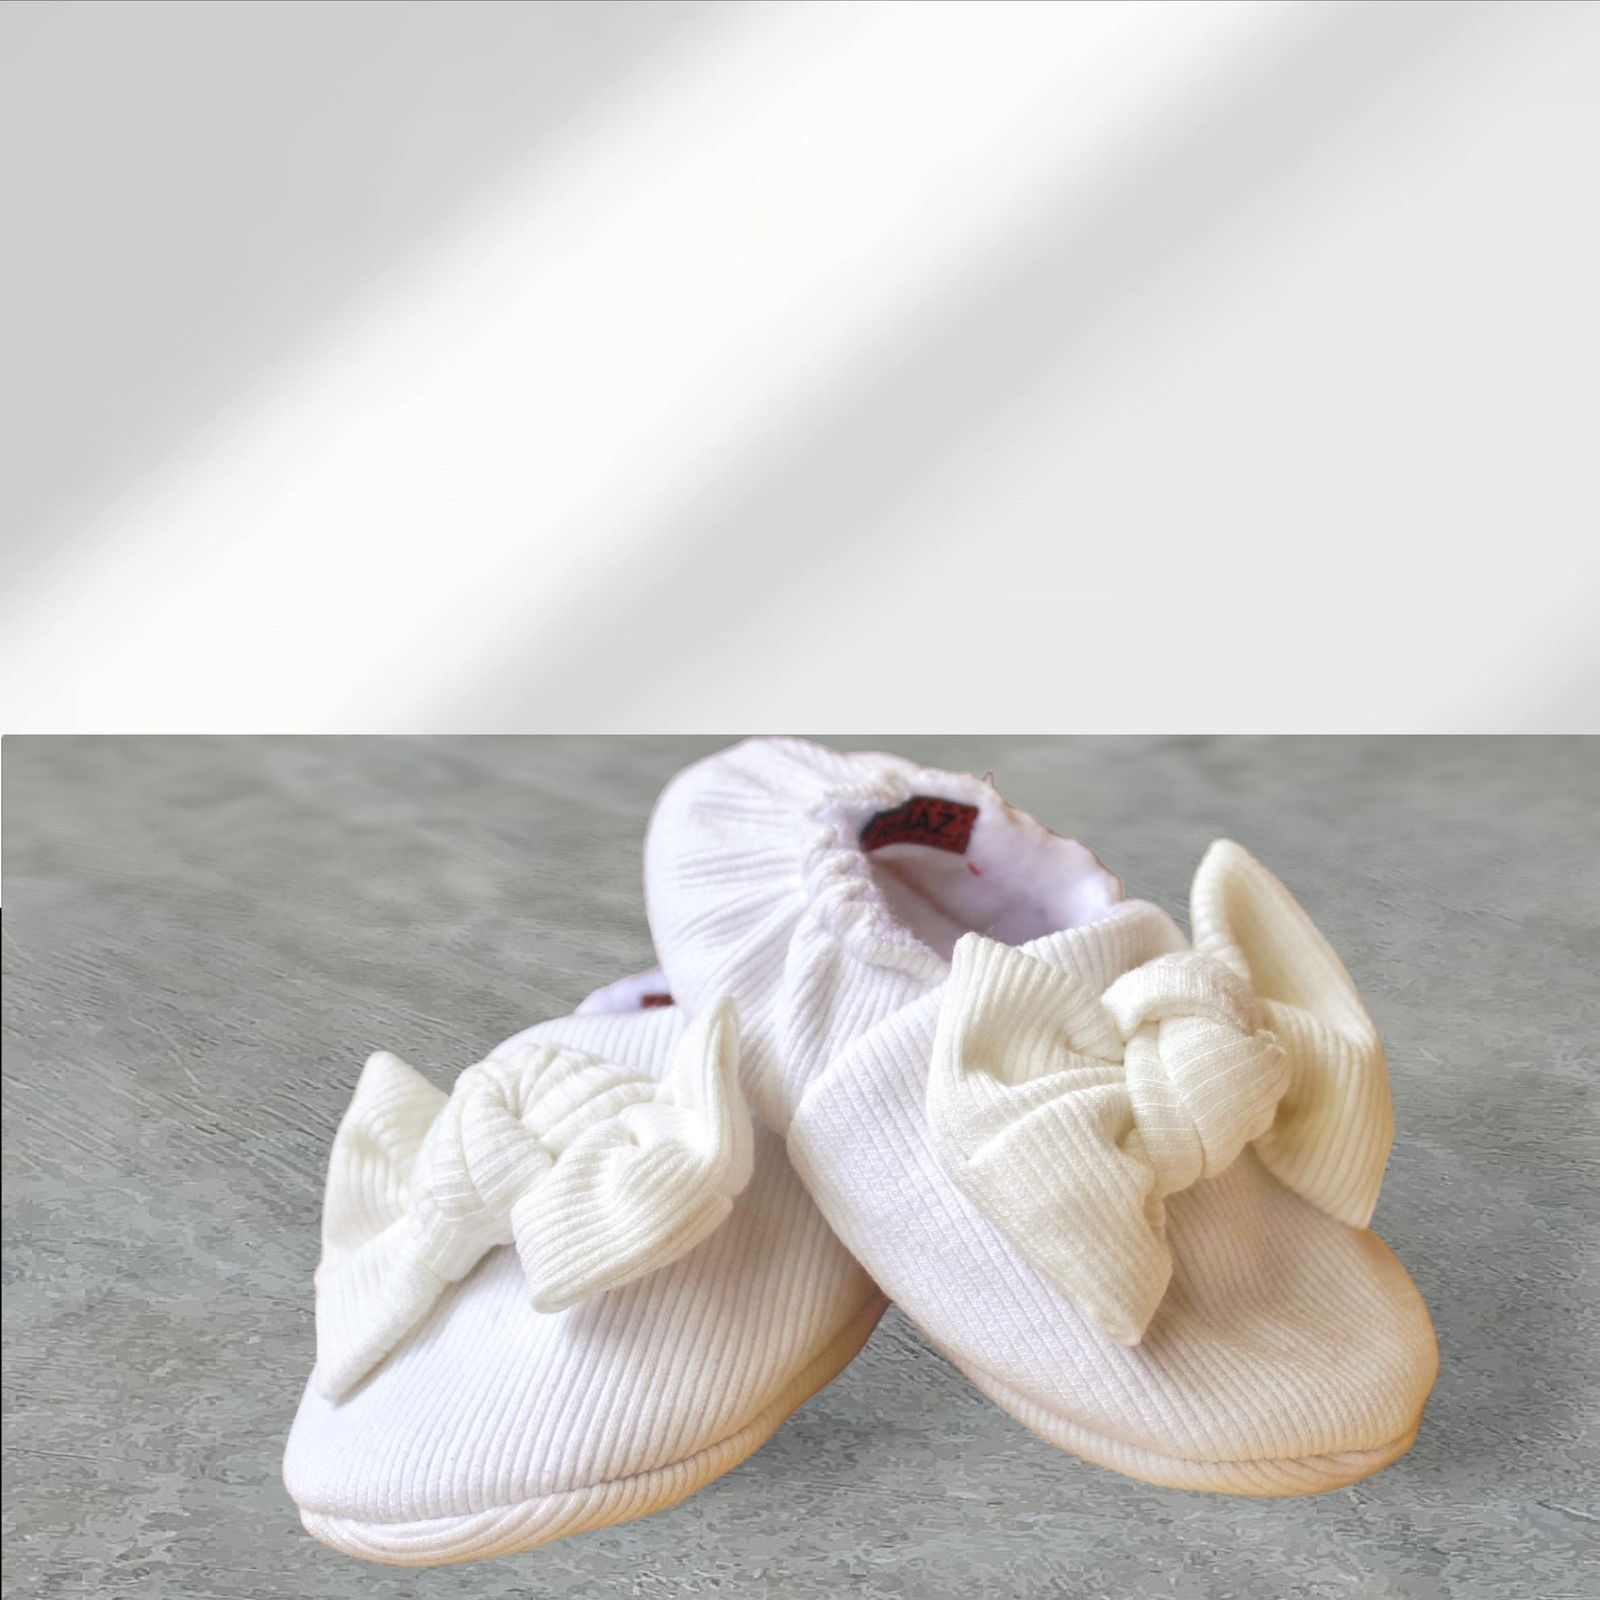 ست هدبند و پاپوش نوزادی ریماز مدل پاپیونی کد m905 رنگ سفید -  - 6